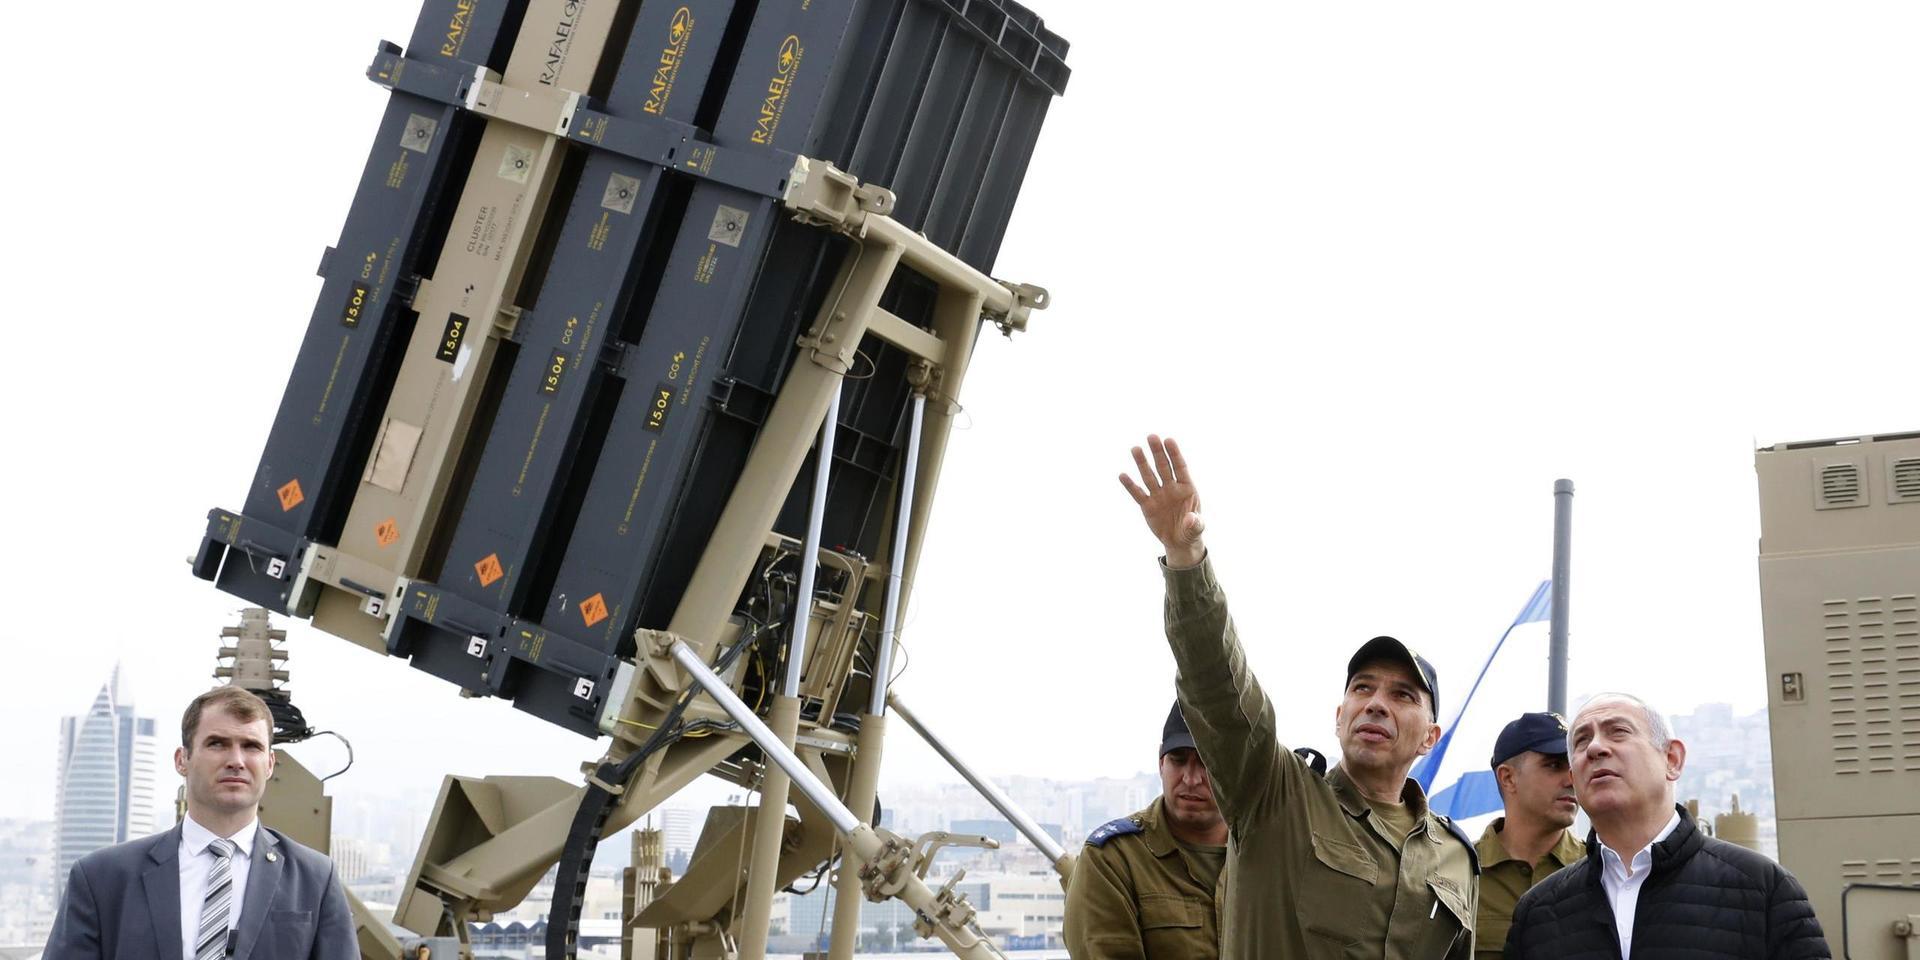 Premiärminister Benjamin Netanyahu (till höger) tar sig en titt på en robotlavett inom 'järnkupol'-systemet. Bild från 2019.